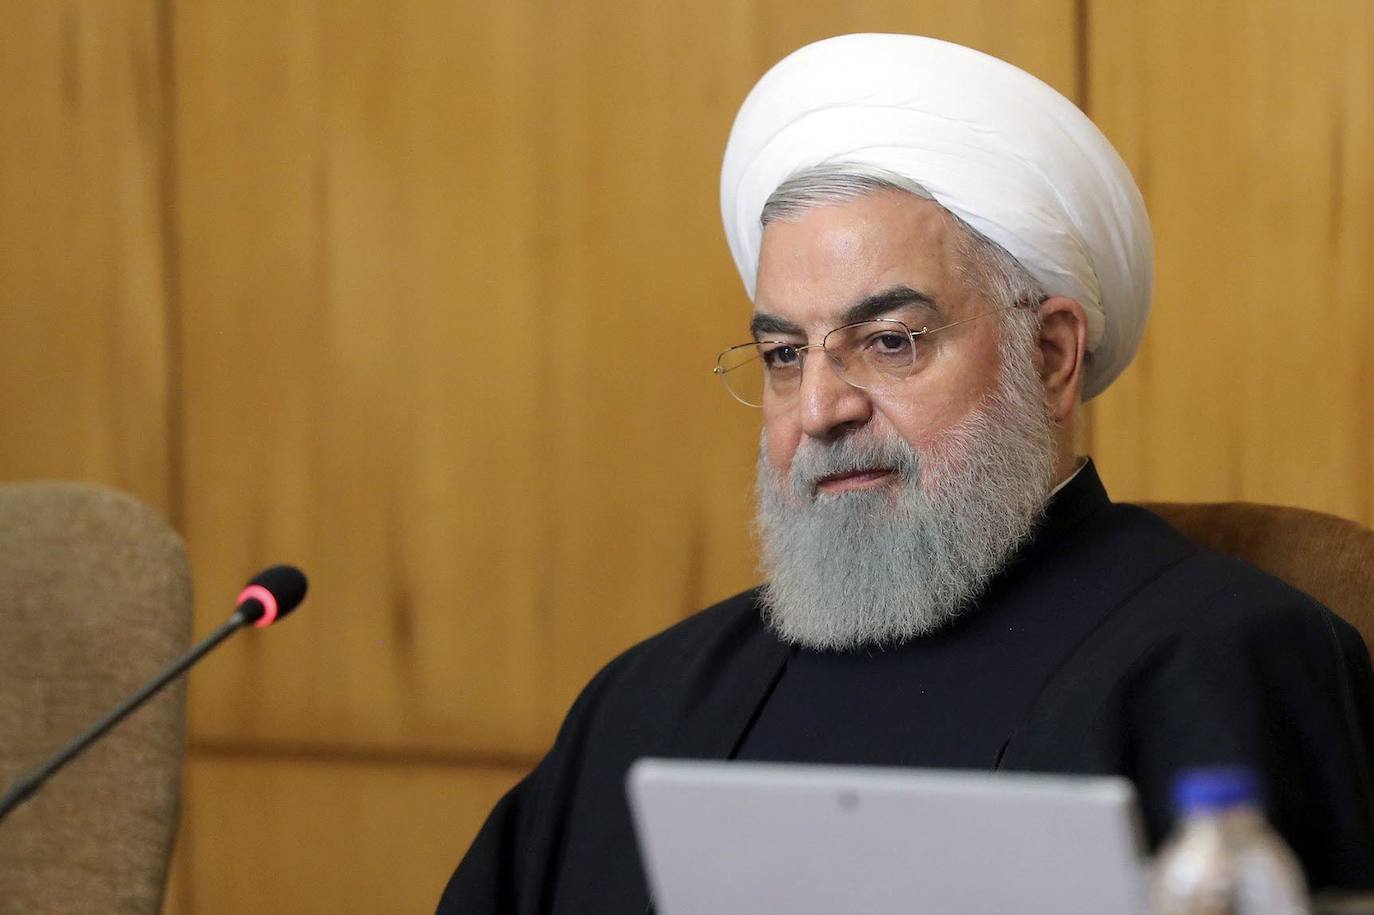 Rohaní advierte que Irán es el «guardián» de la seguridad en Ormuz y no busca una guerra